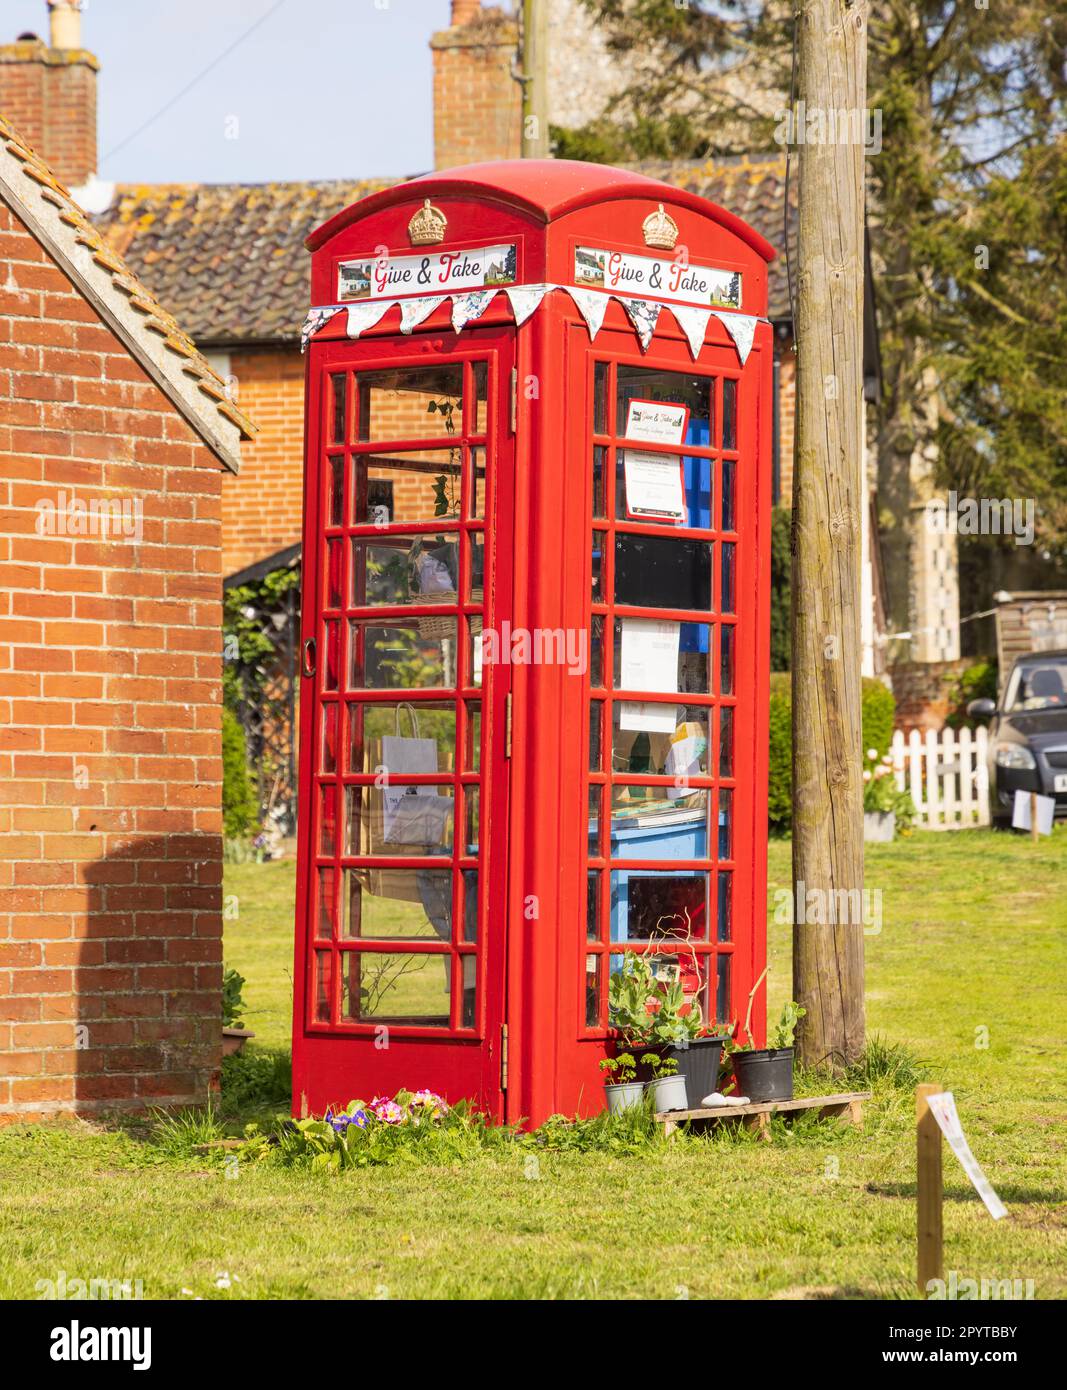 Alte öffentliche rote Telefonzelle, die als Drehscheibe für den freien Austausch unerwünschter Bücher, Lebensmittel, Pflanzen und Spielzeug genutzt wird. Middleton, Suffolk, Großbritannien Stockfoto